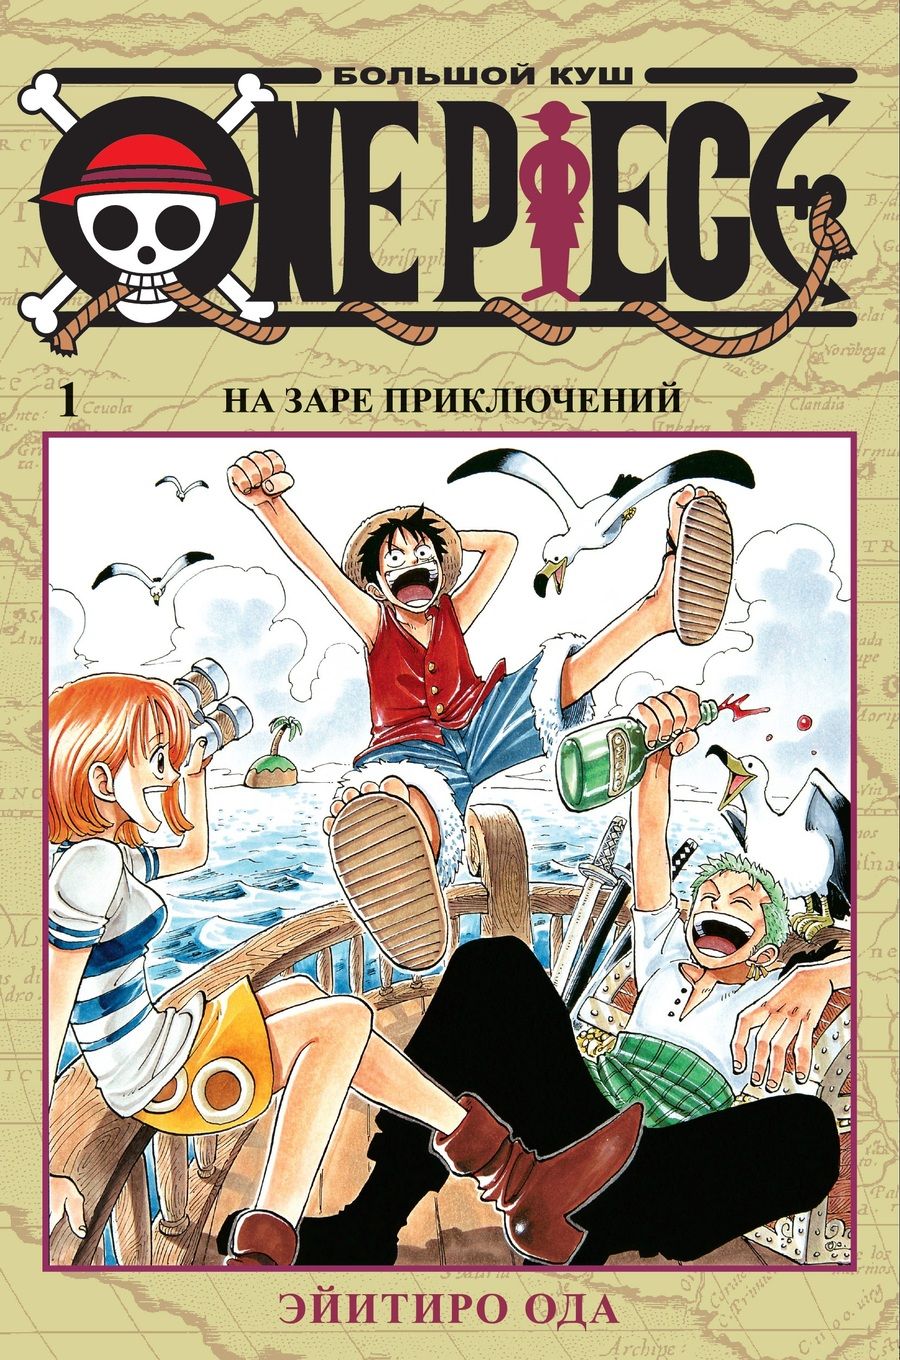 Обложка книги "Ода: One Piece. Большой куш. Книга 1. На заре приключений"